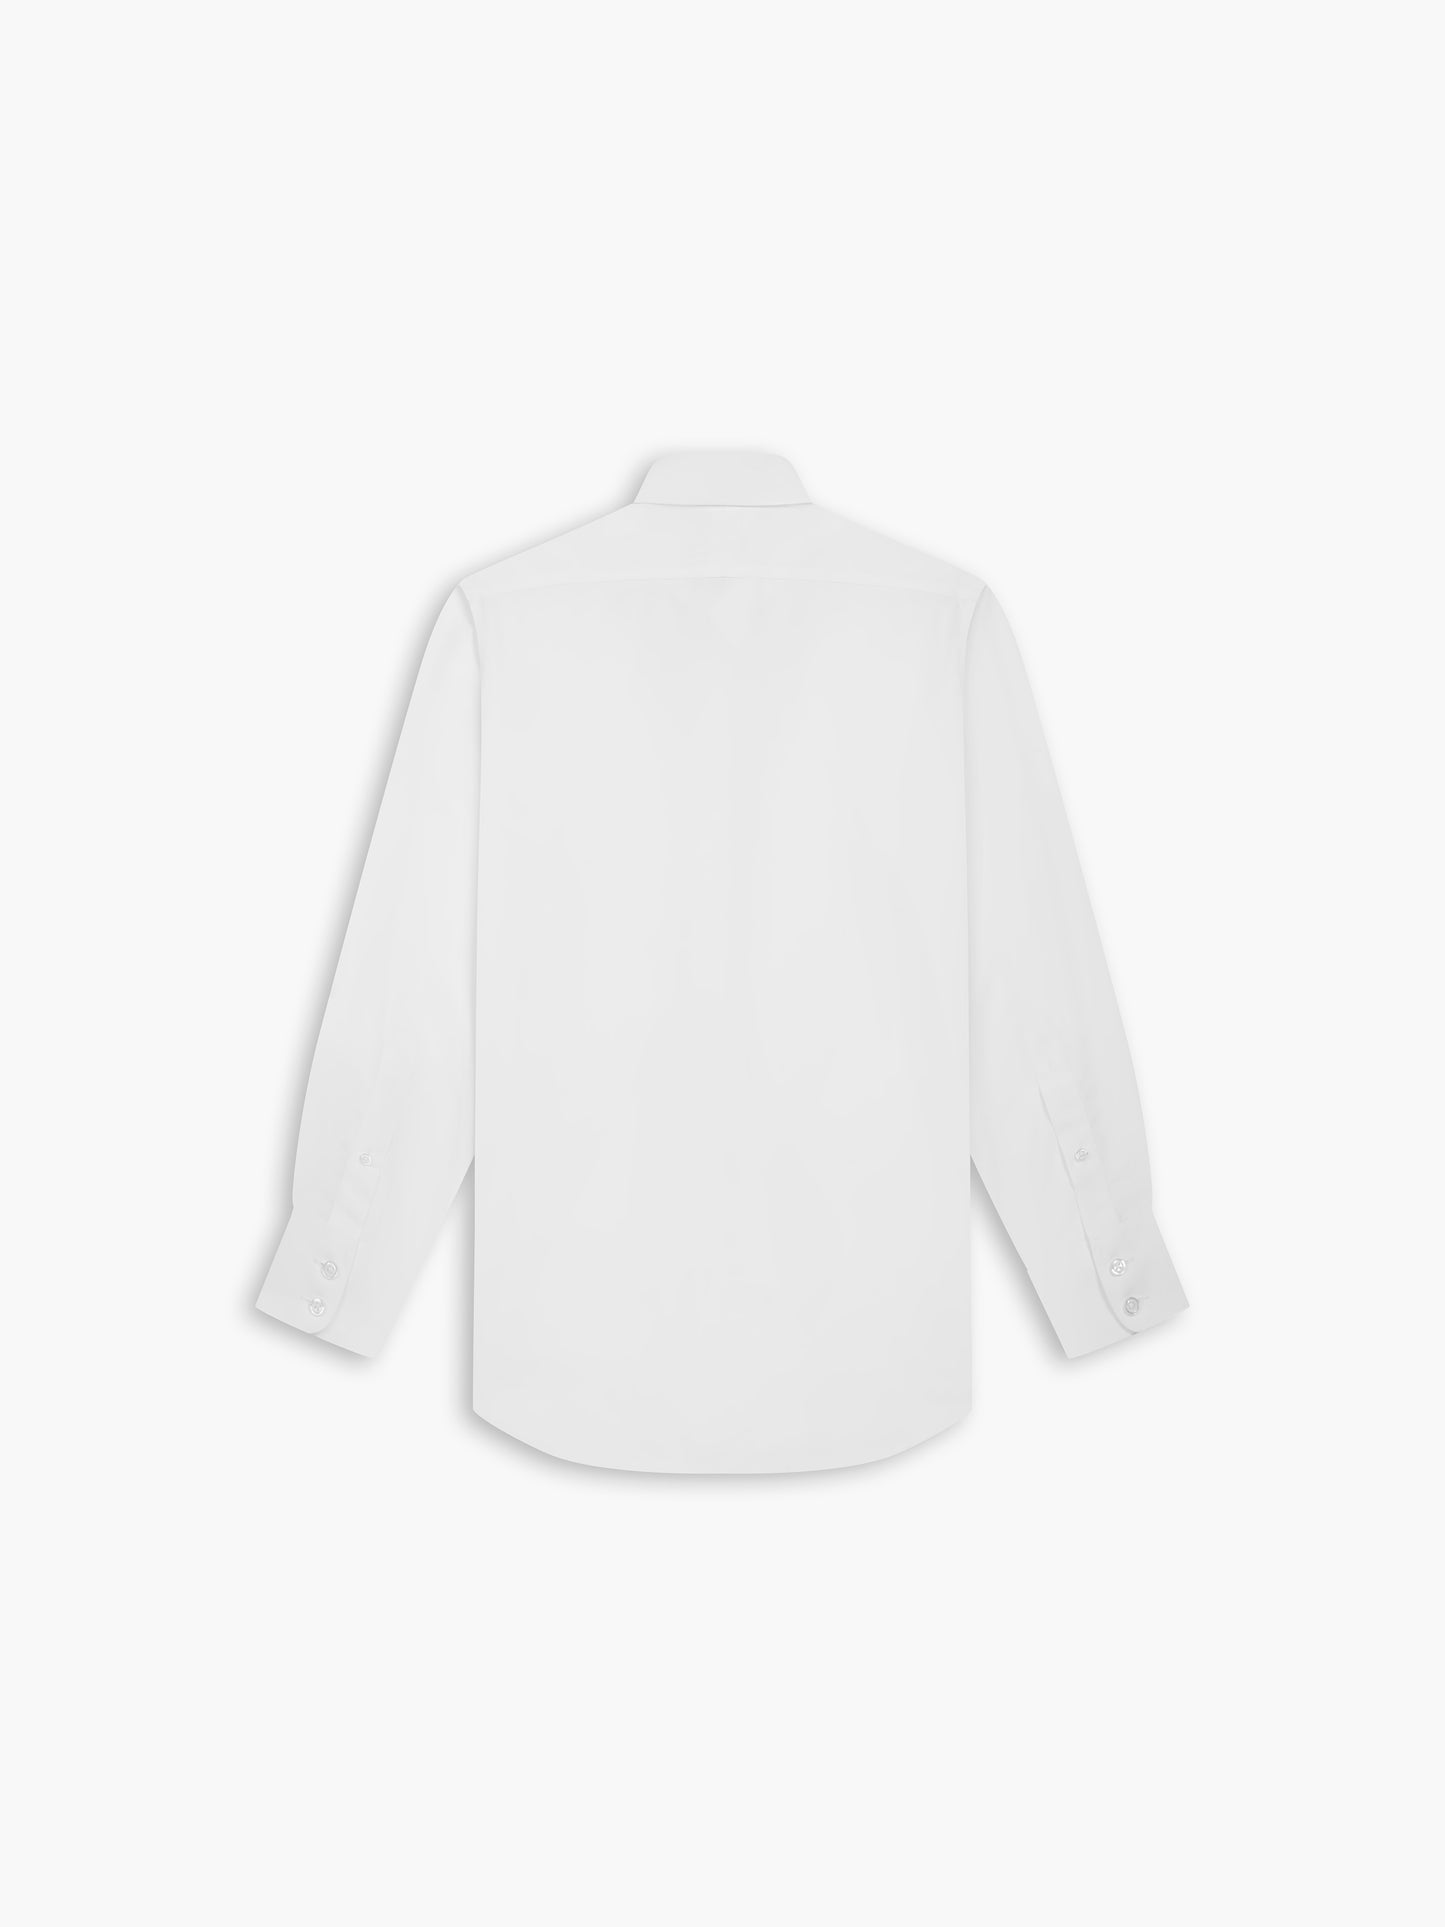 Non-Iron White Poplin Slim Fit Single Cuff Classic Collar Shirt